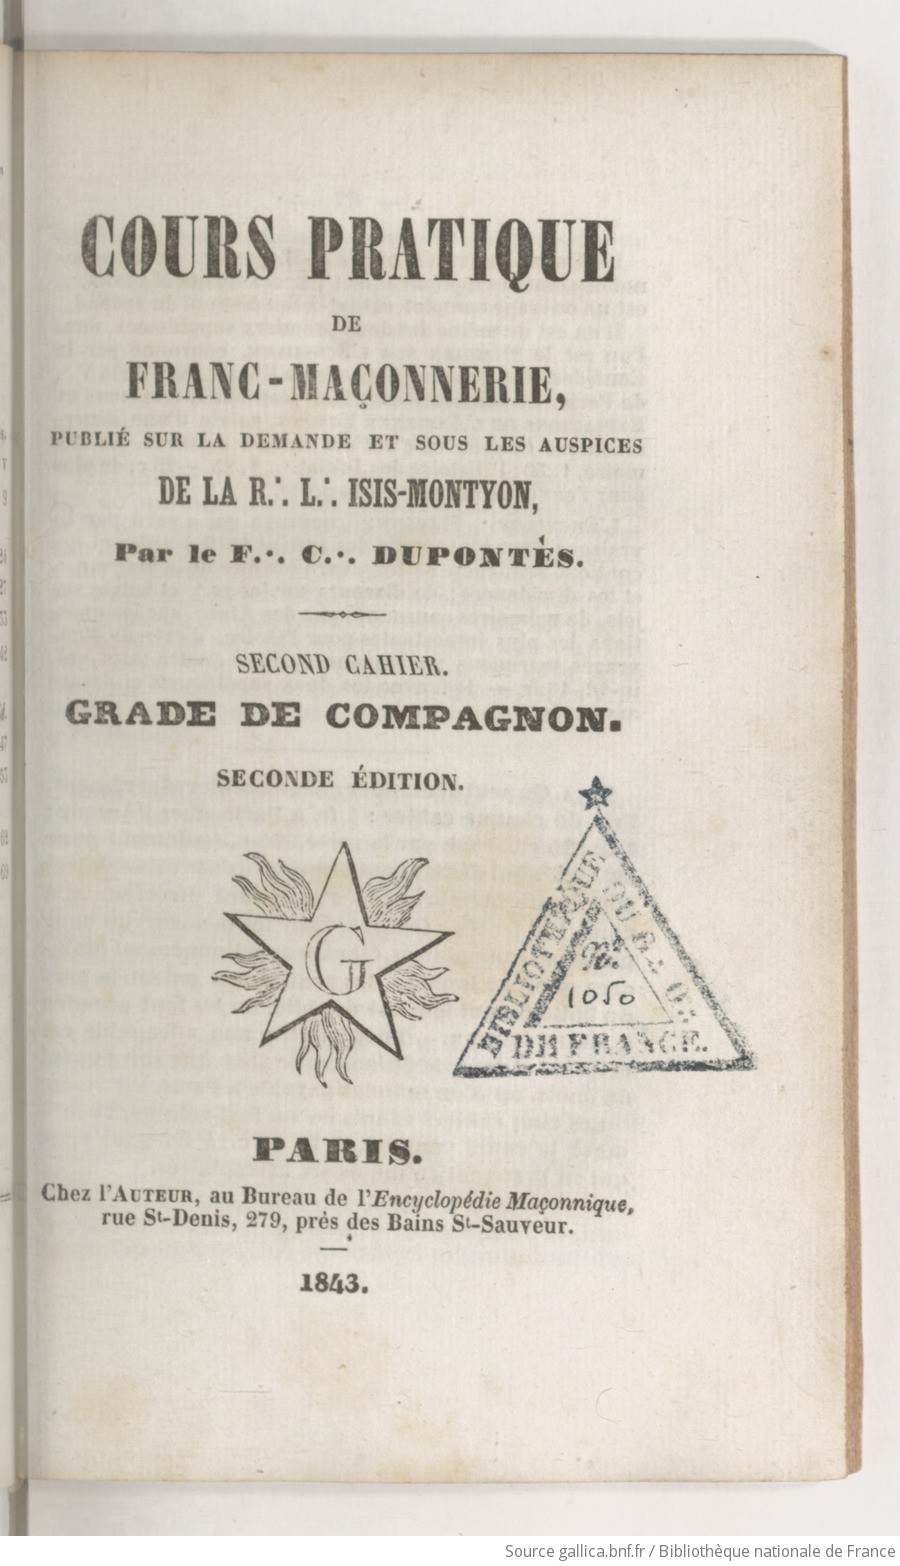 encyclopedie franc maconnerie